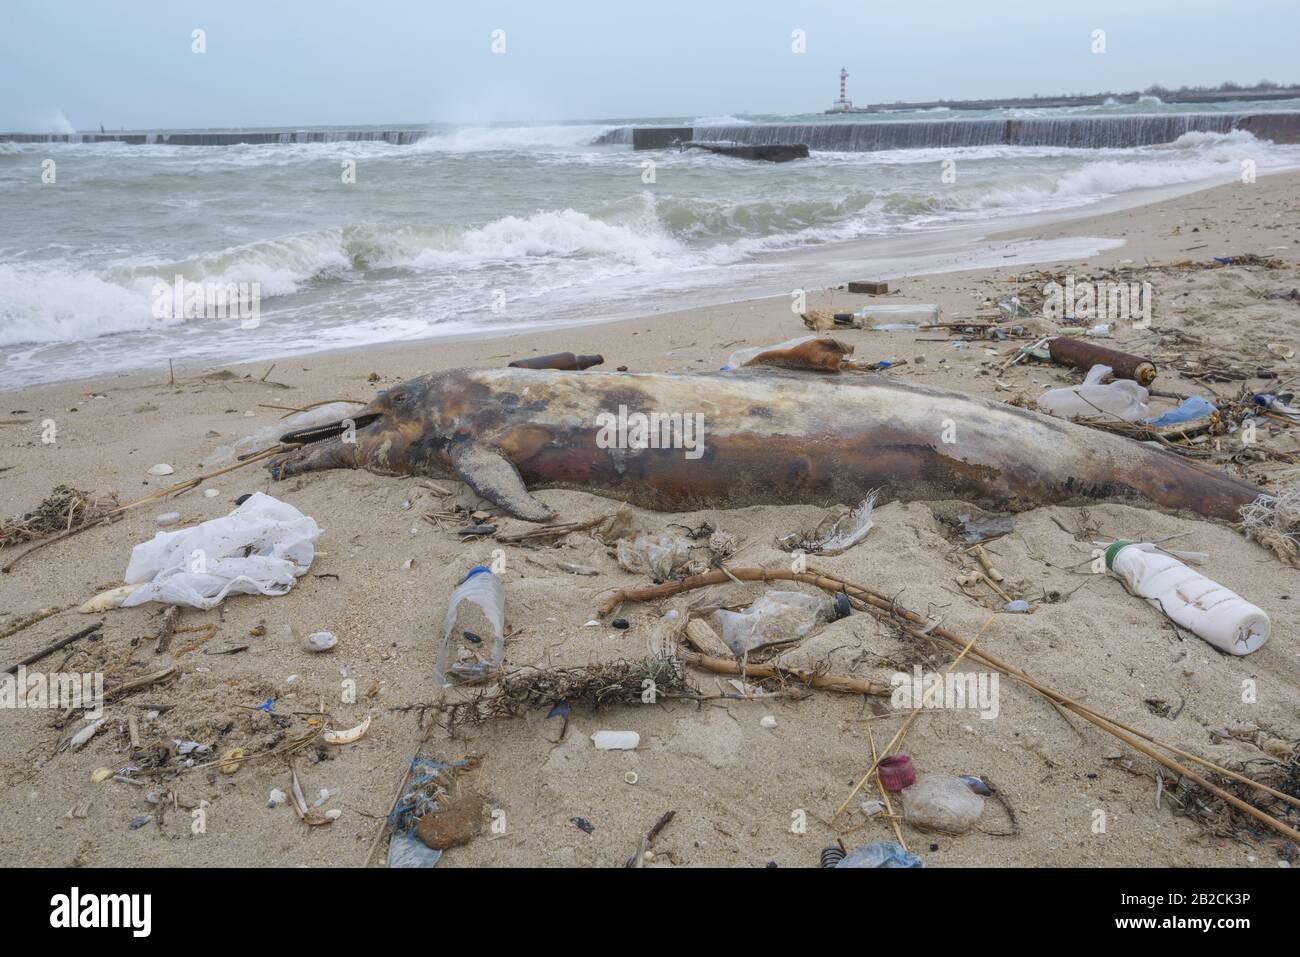 El delfín tirado por las olas se encuentra en la playa y está rodeado de basura plástica. Botellas, bolsas y otros residuos plásticos cerca de es delfín muerto en la playa de arena. Contaminación plástica que mata a animales marinos Foto de stock